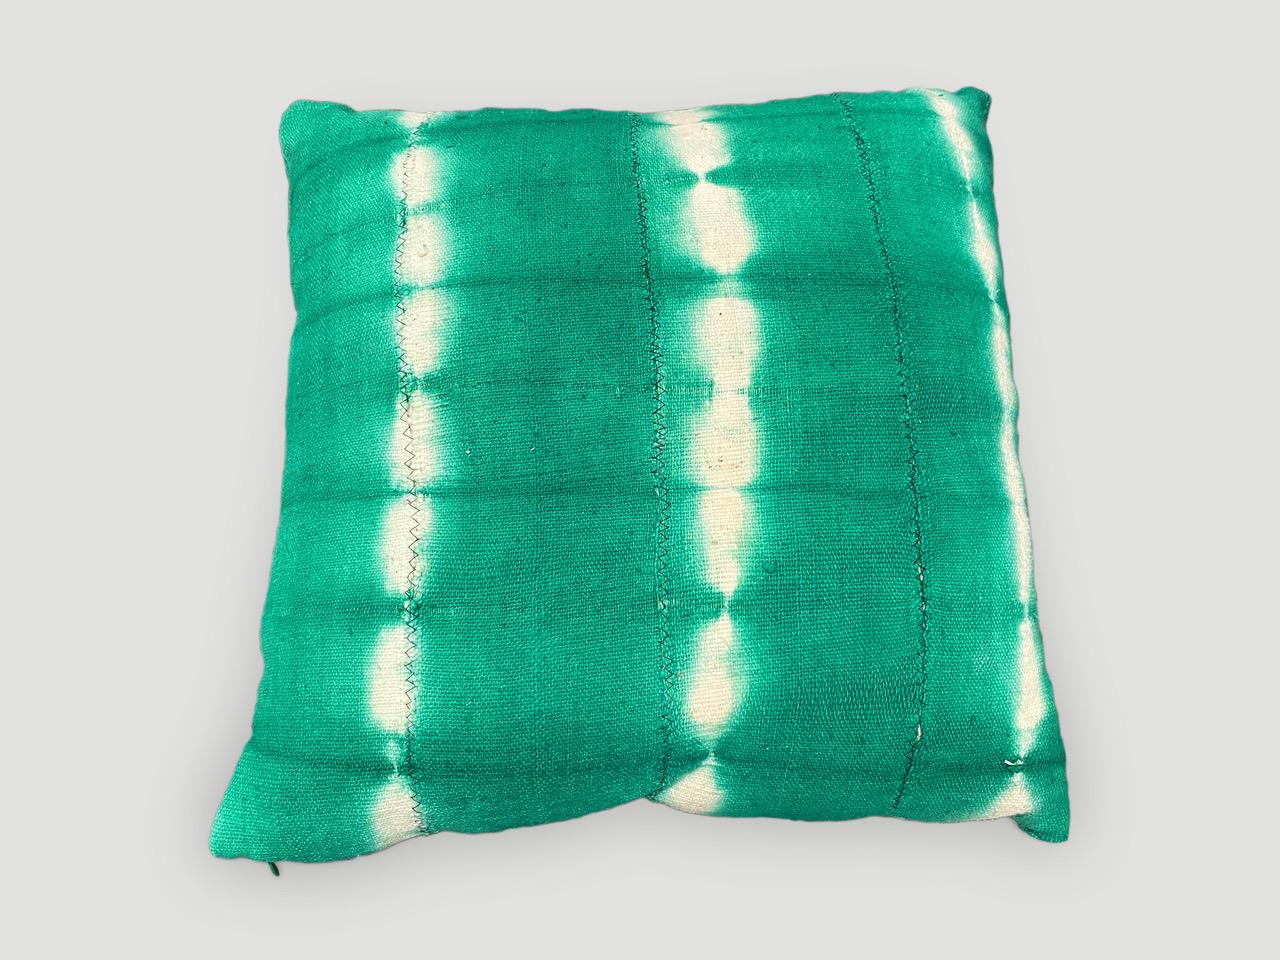 Grüner überfärbter Schlammstoff Mali-Textil aus Westafrika in Form eines Kissens. Doppelt unterlegt mit verdecktem Reißverschluss. Inklusive Einsatz. Wir haben eine Sammlung. Der Preis bezieht sich auf das abgebildete Exemplar.

Andrianna